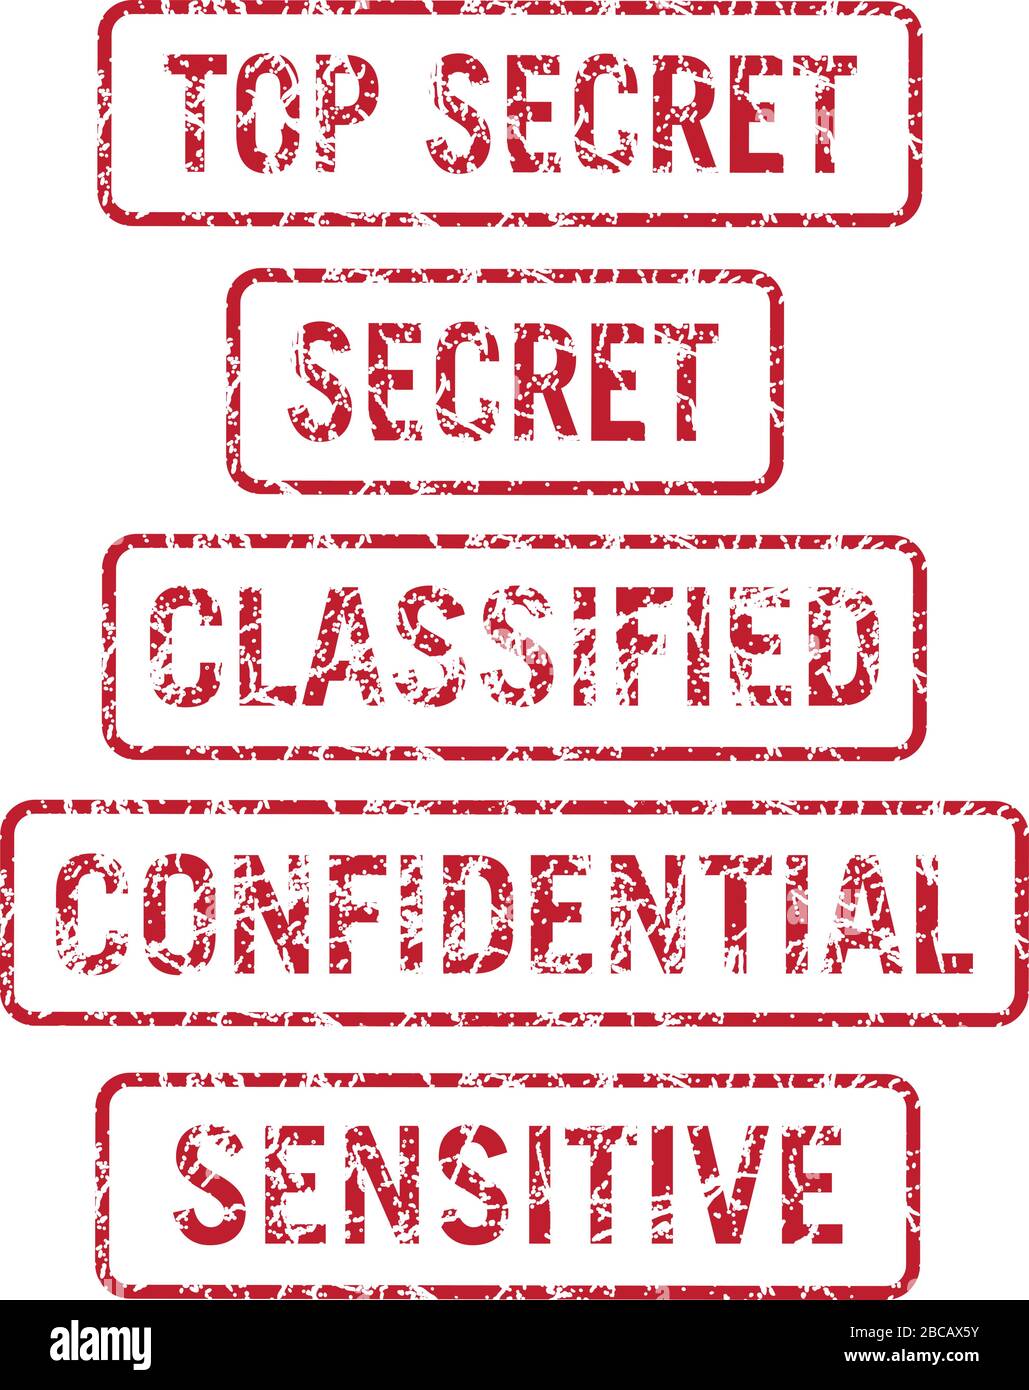 Seguridad de la información Top Secret, Secret, Classified, Confidential and Sensitive Stamps Distressed Isolated Vector Illustration Ilustración del Vector